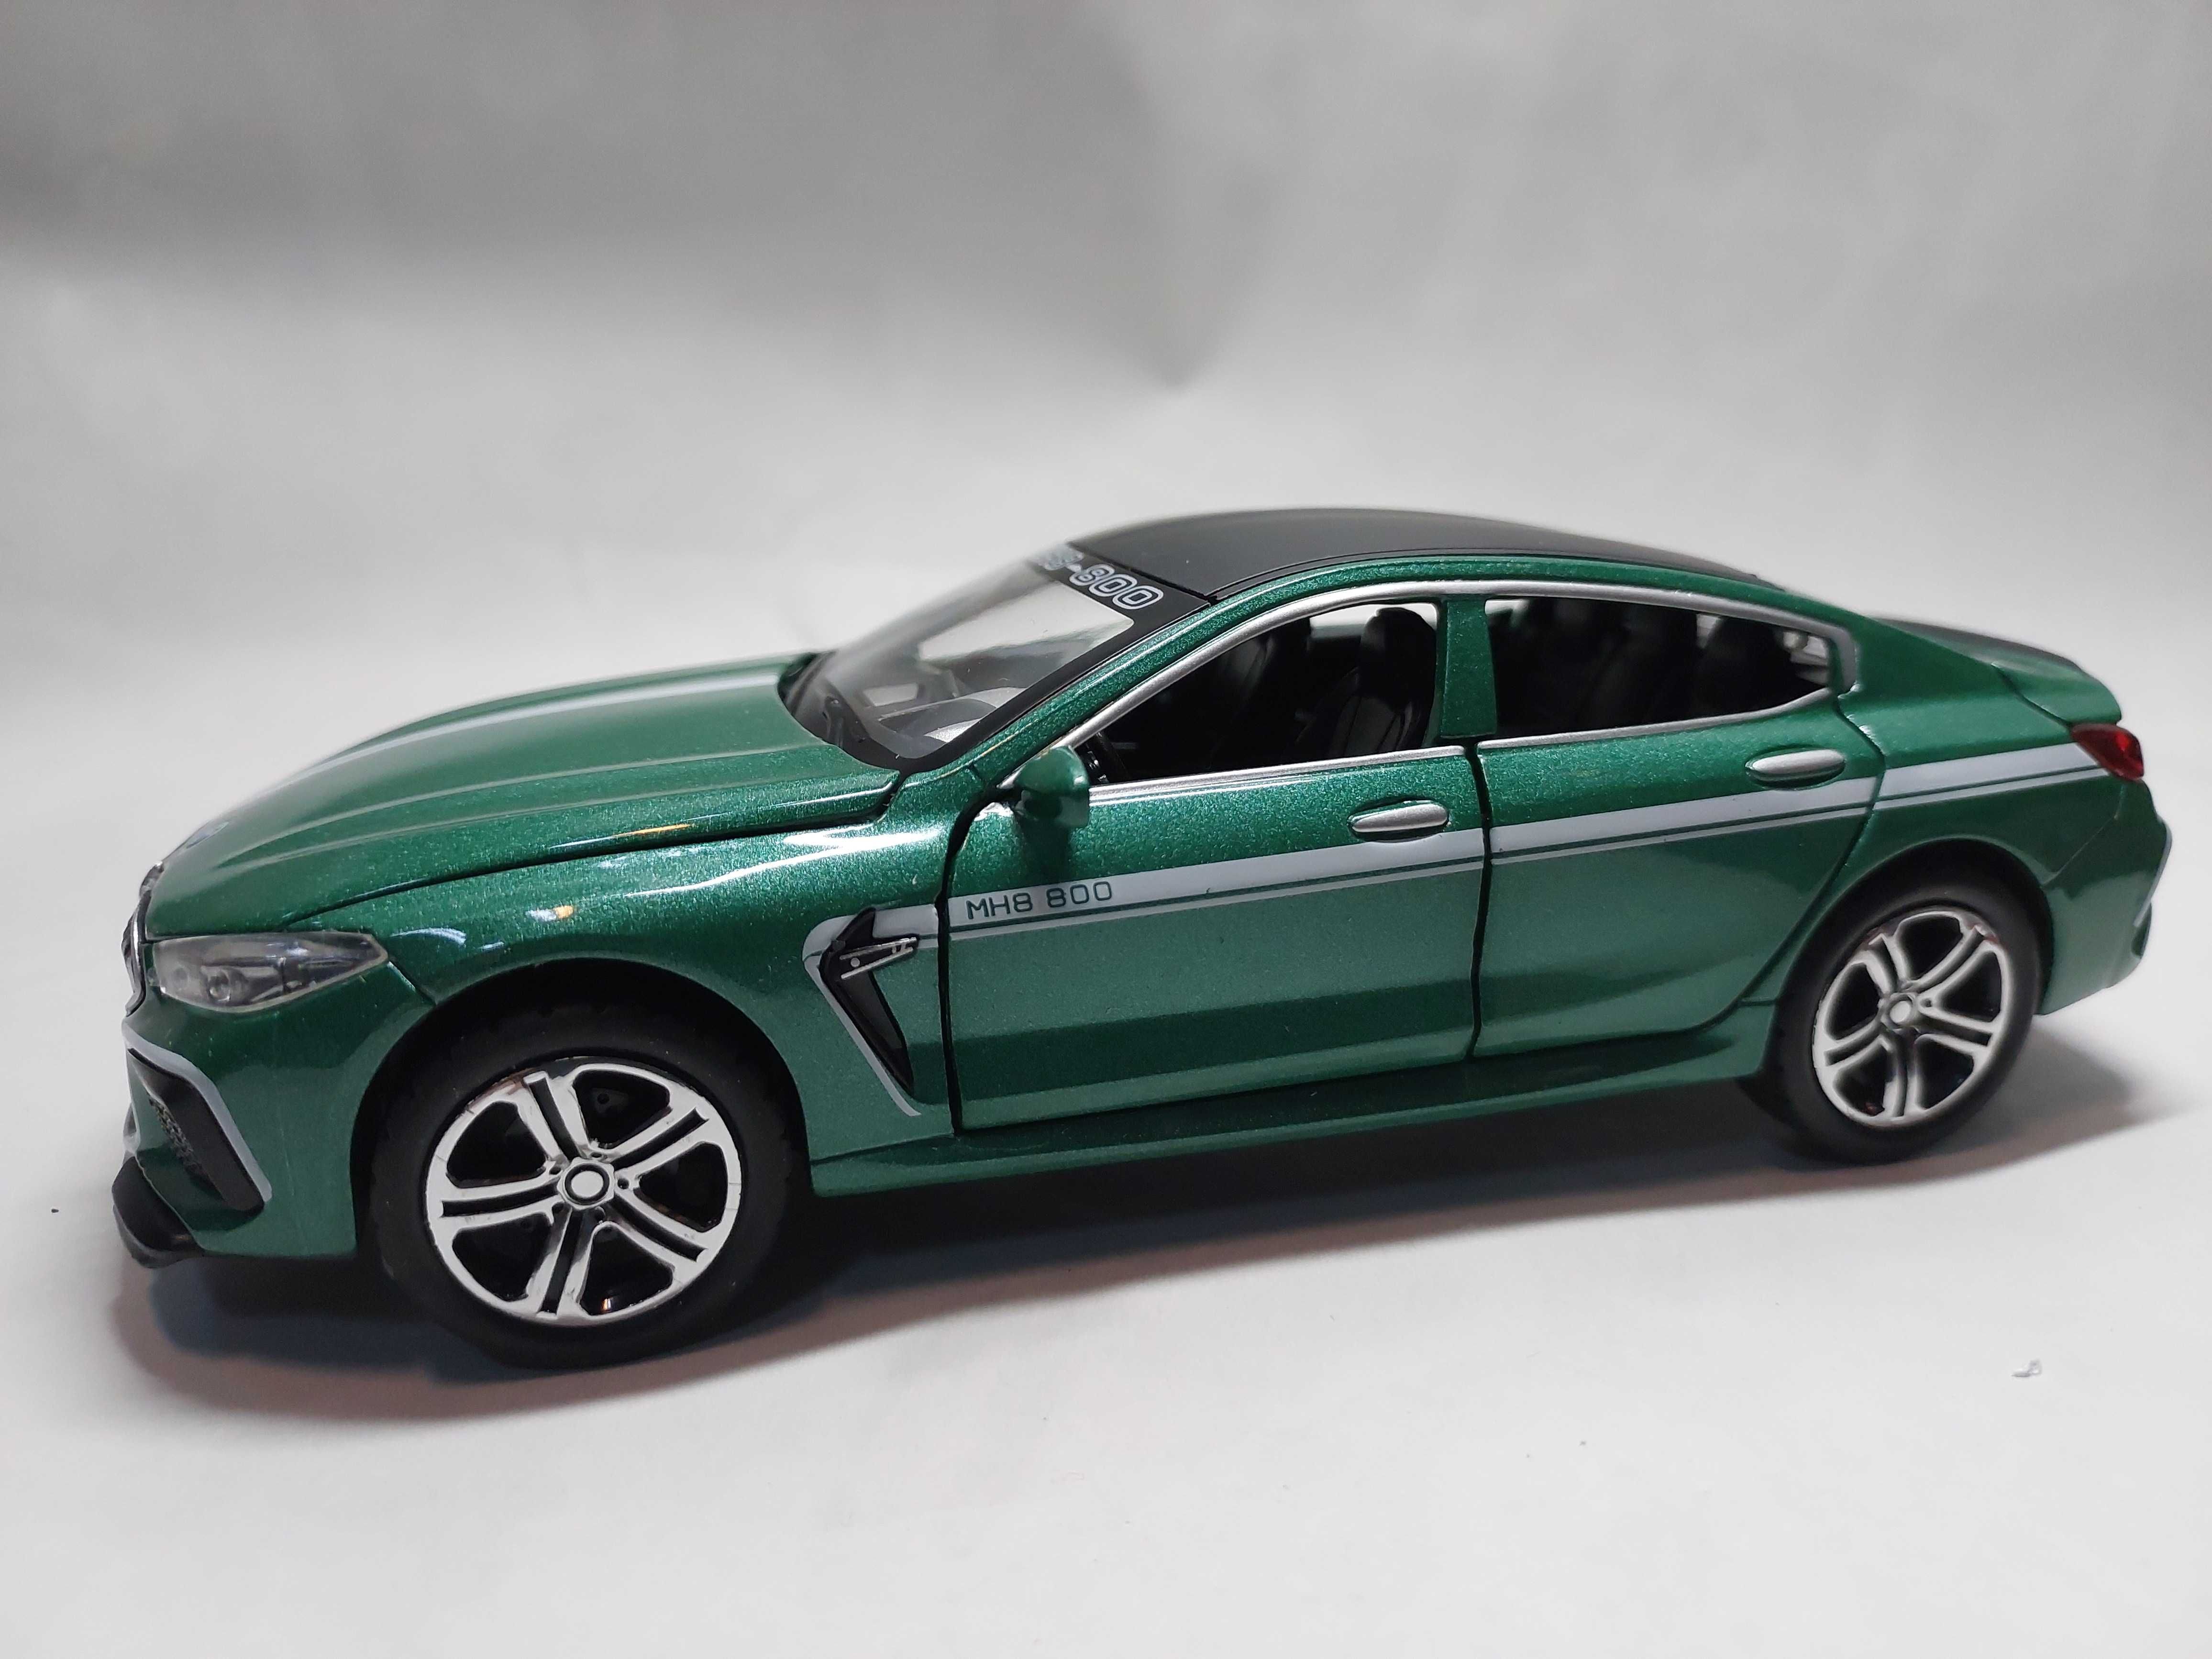 Macheta metal BMW M8 verde